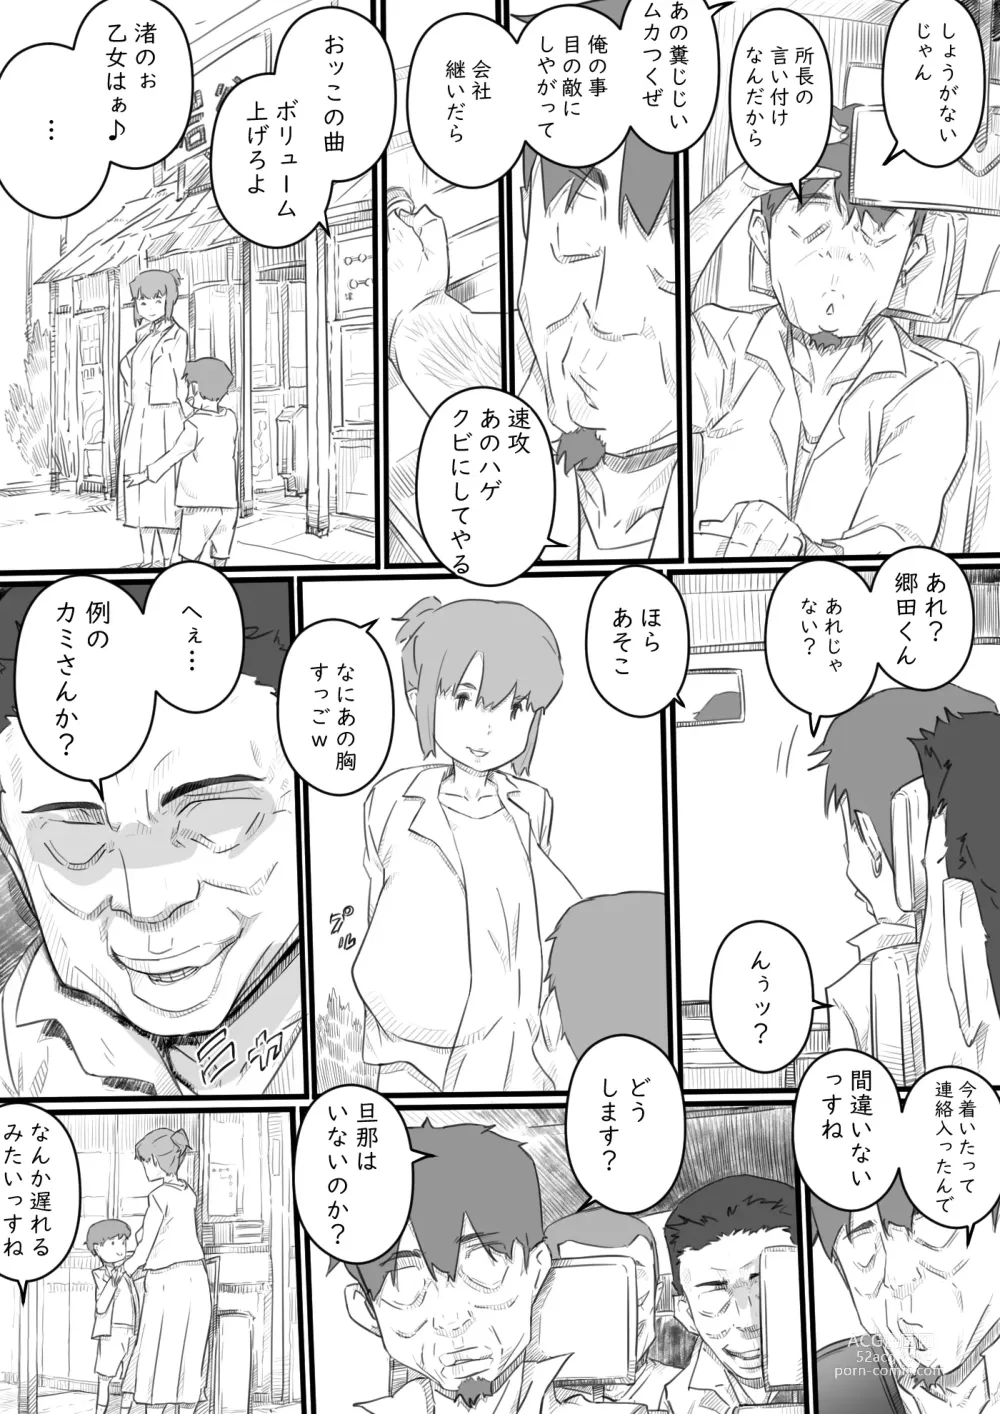 Page 7 of doujinshi Kyou kara Mama wa Betsu no Dareka no Mono...